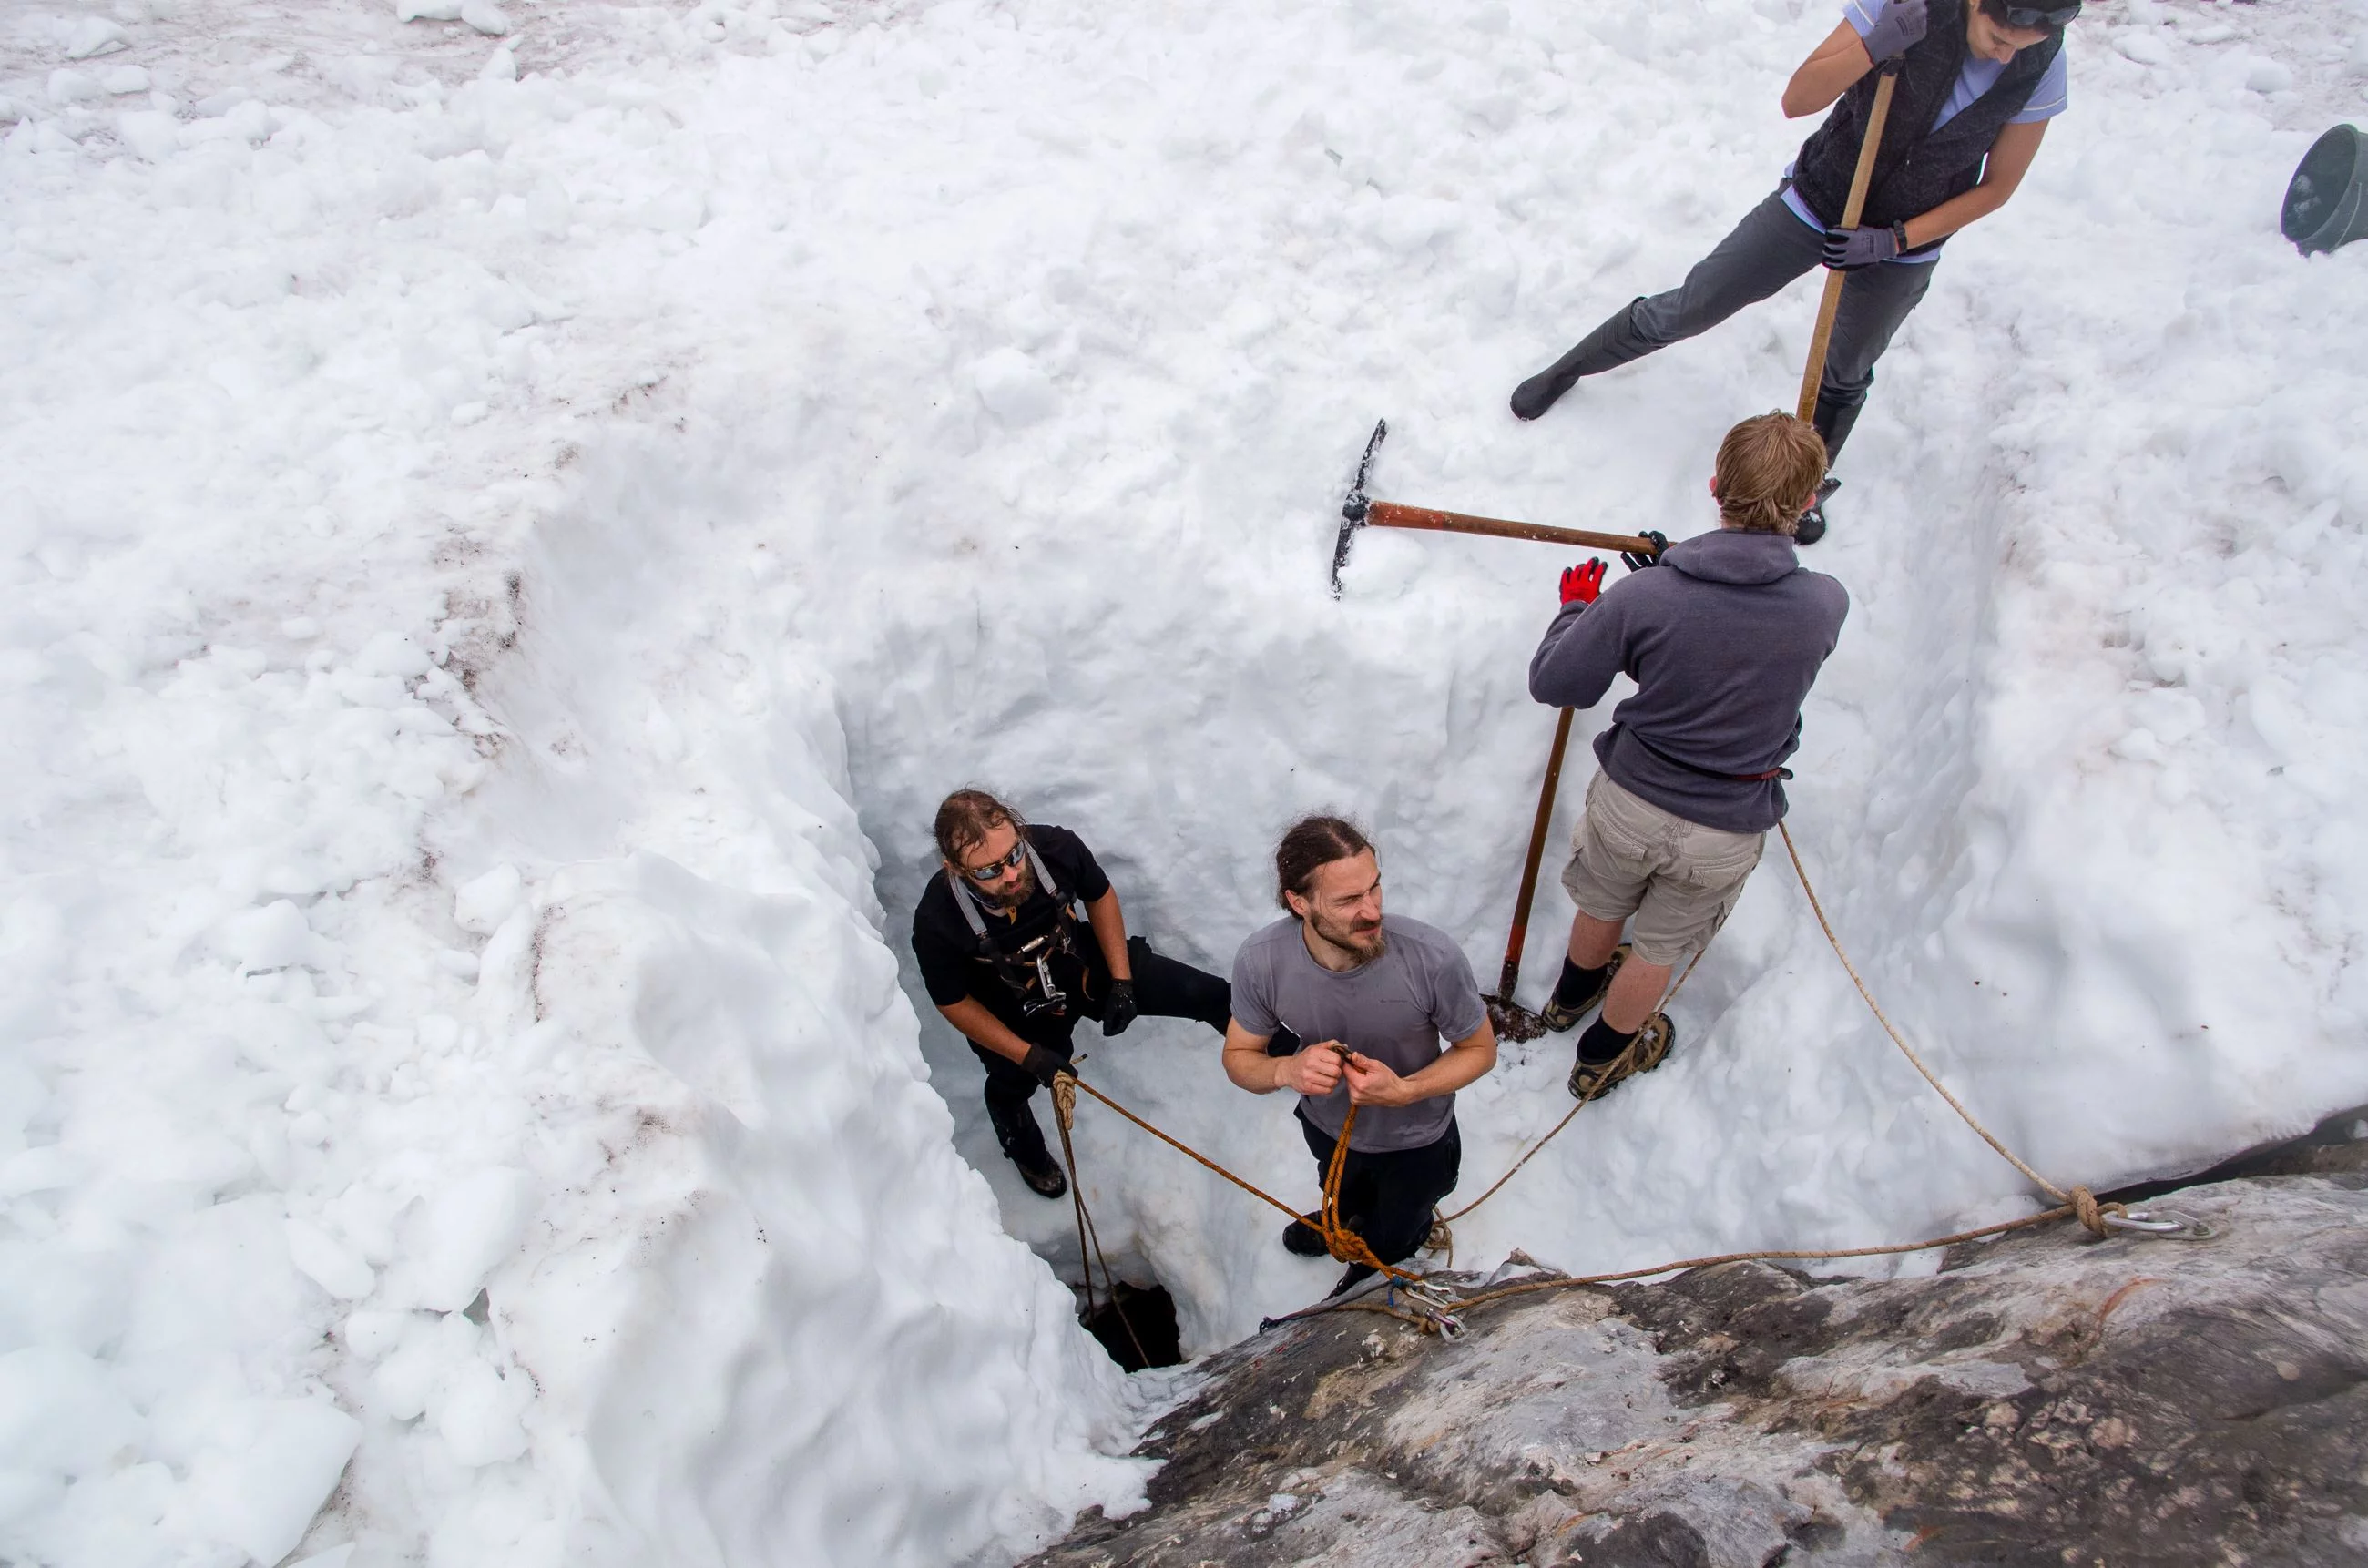 Na początku wyprawy w Dachstein, która rozpoczęła się pod koniec sierpnia, wejście na WUG o wysokości 2001 m zostało ukryte pod około 7 metrami śniegu. Axel Hack i jego koledzy przedostali się przez tę warstwę, by dostać się do ukrytego przejścia.